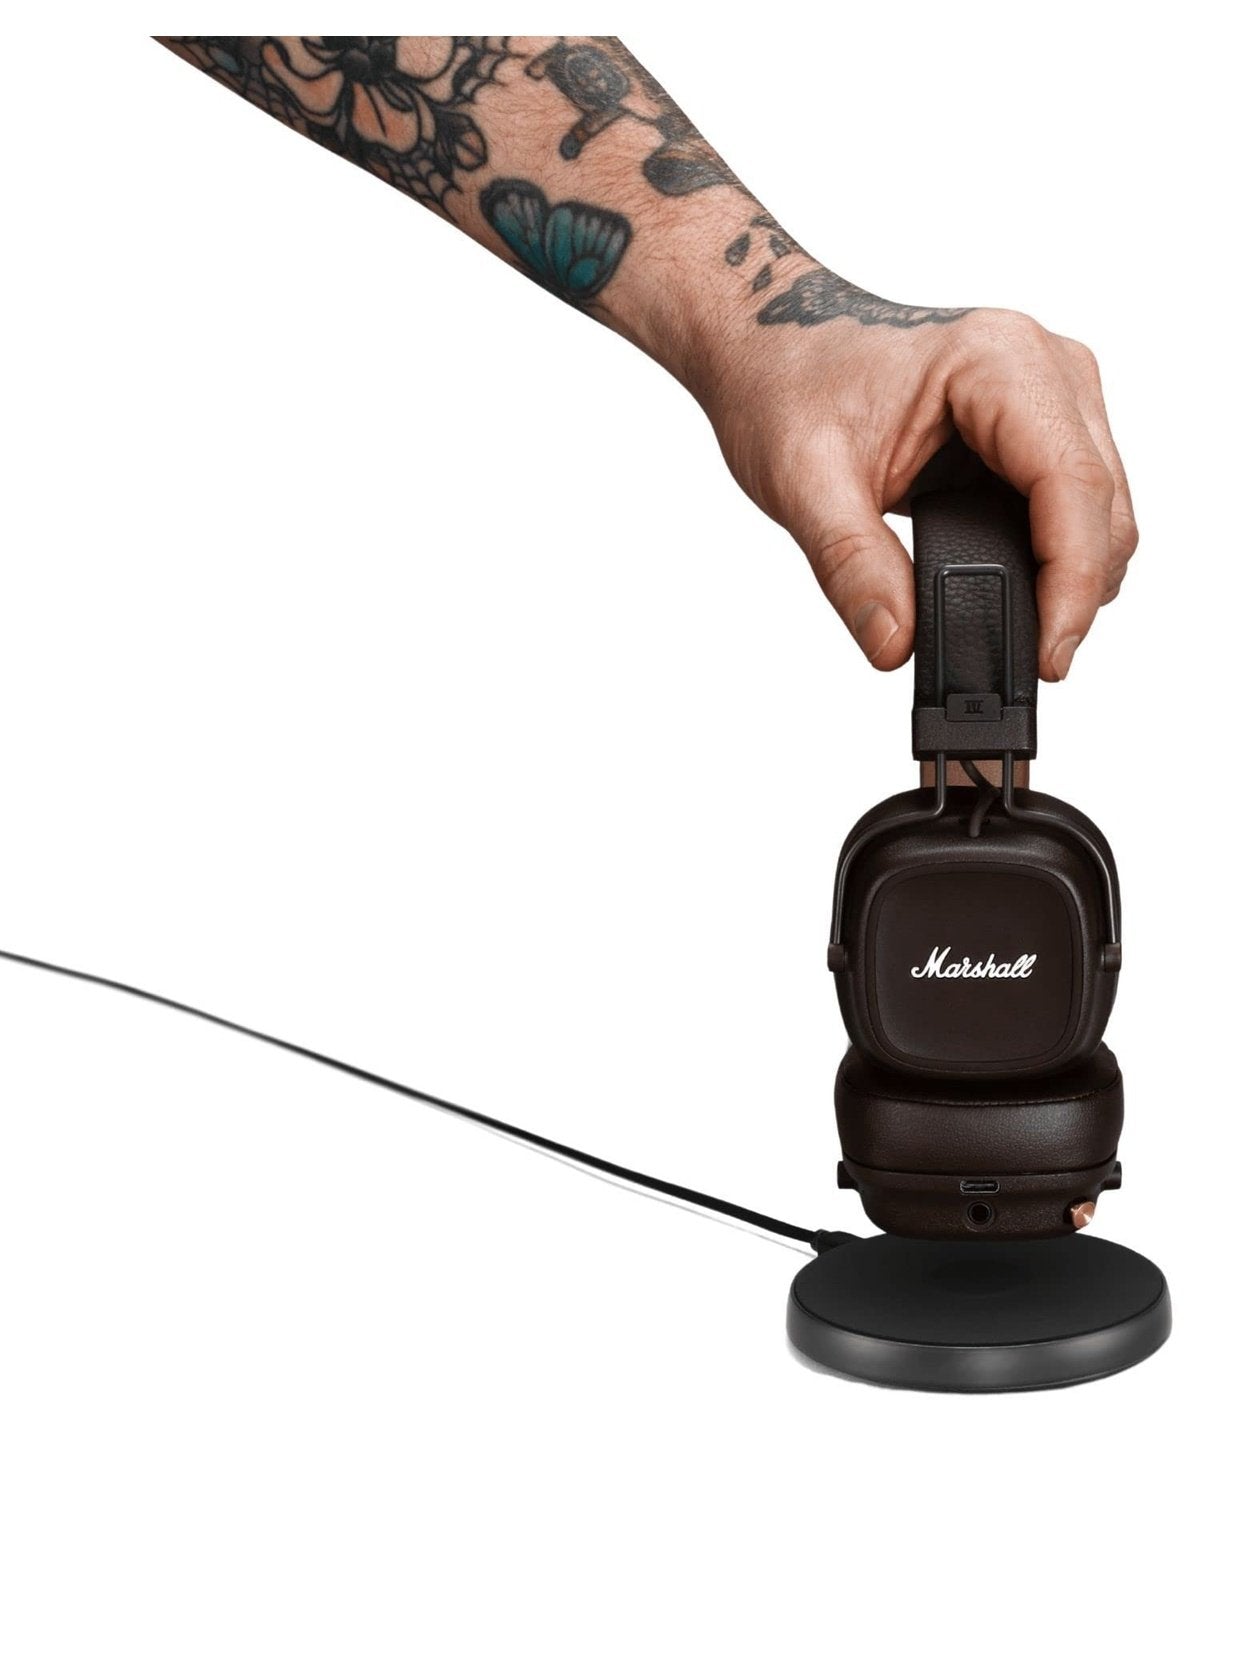 Marshall Major IV On-Ear Bluetooth Headphone, Black